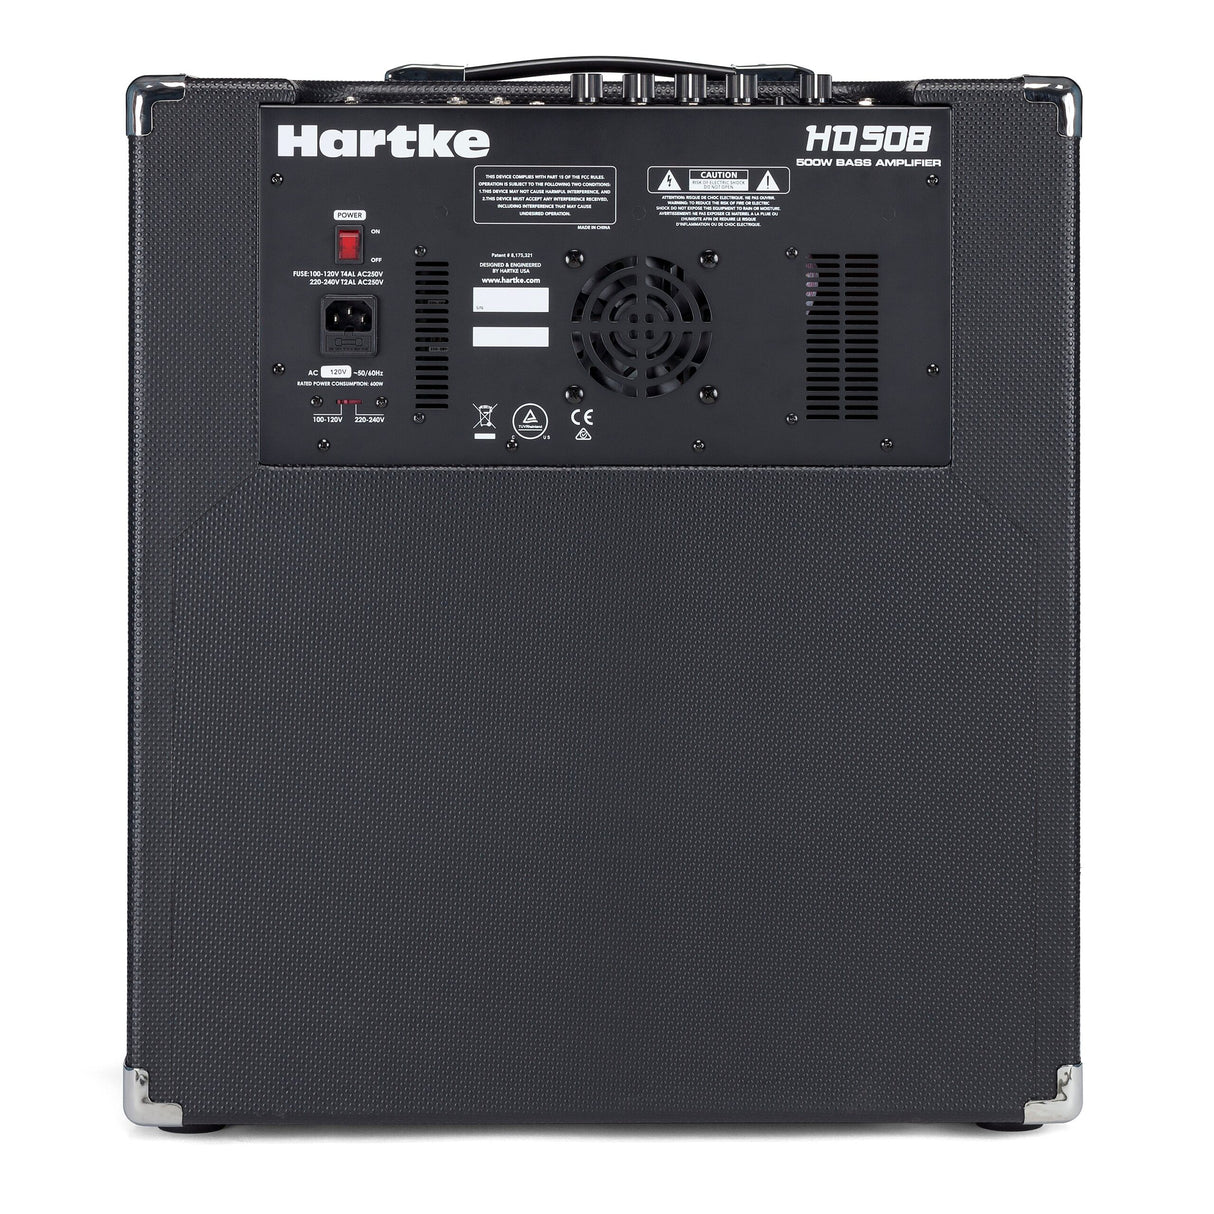 Hartke HD508 500W Bass Combo